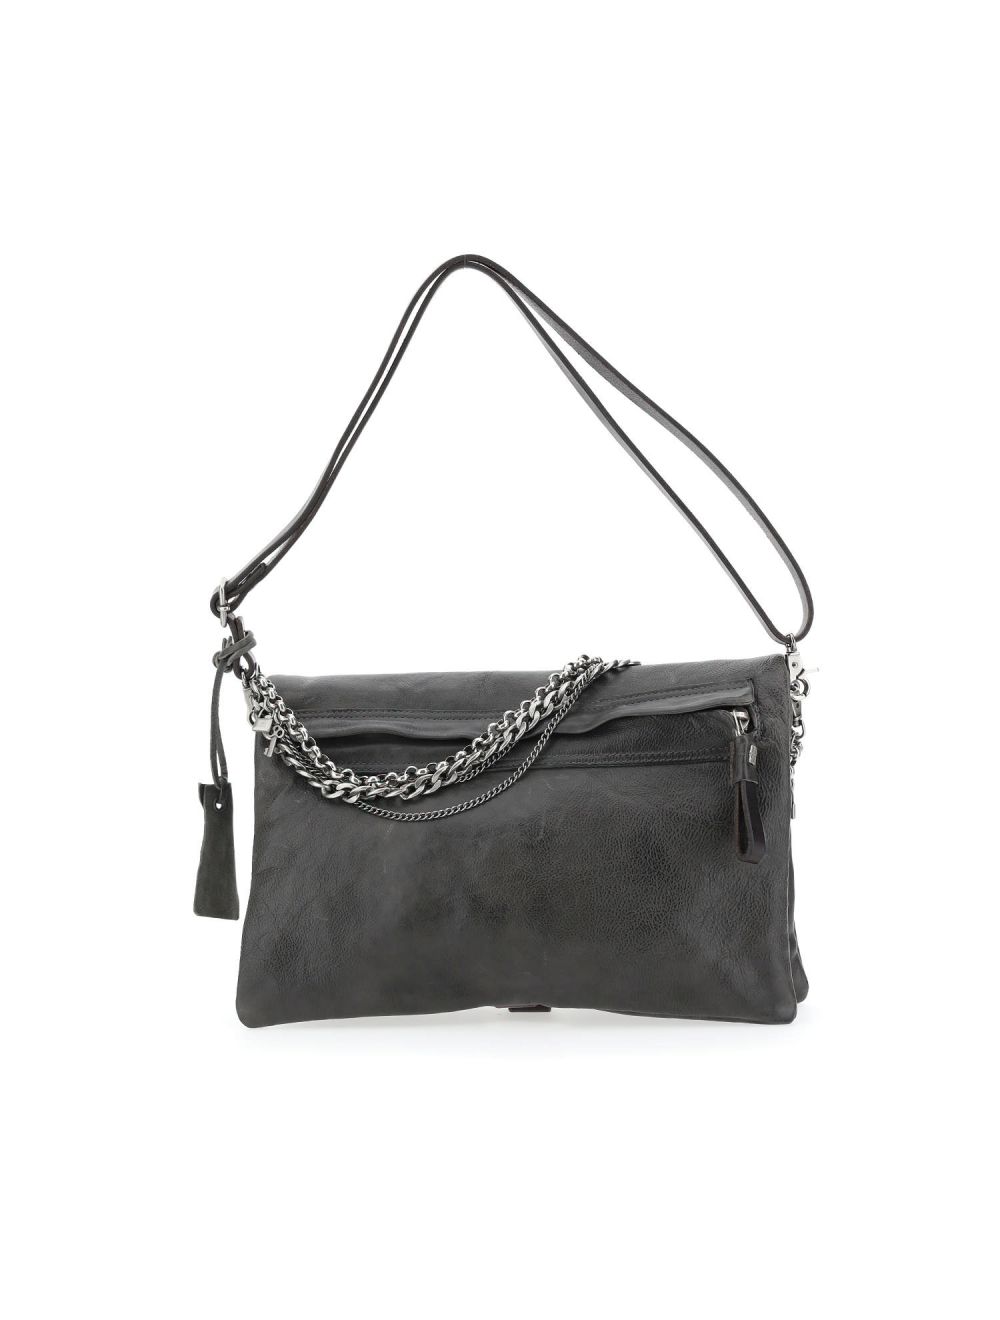 Buy borse lele Women Black Sling Bag black Online @ Best Price in India |  Flipkart.com